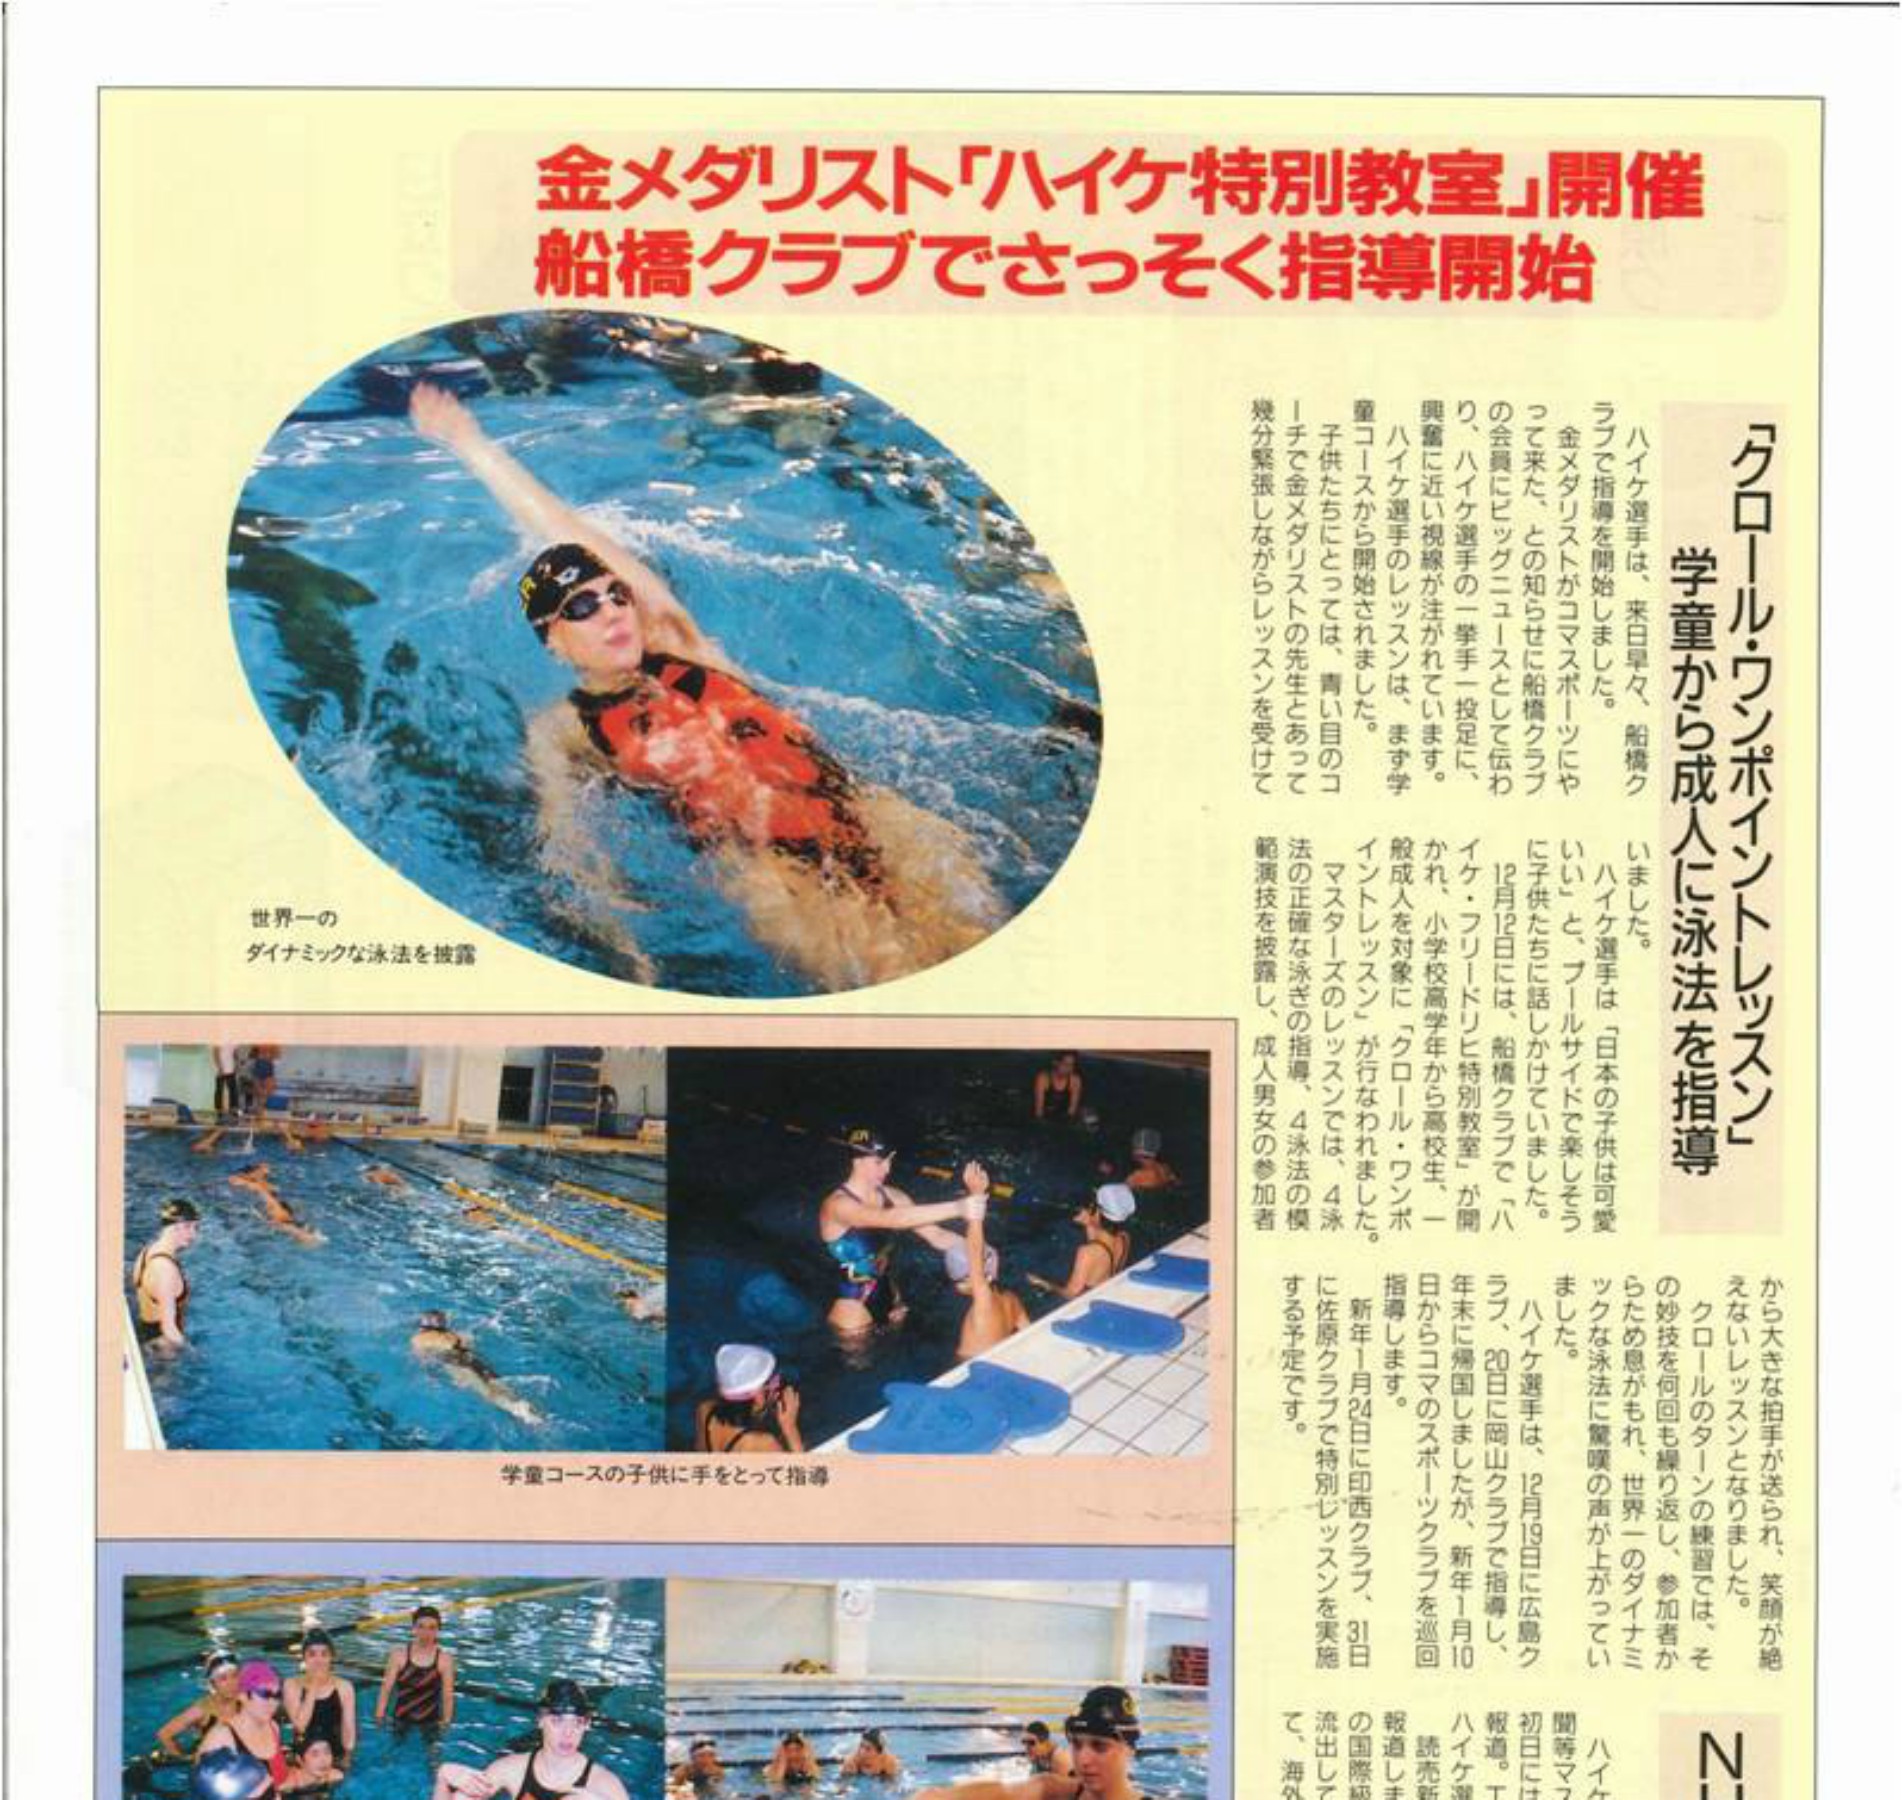 Vereinszeitschrift für Coma Swimming Club Japan 1992 (2)